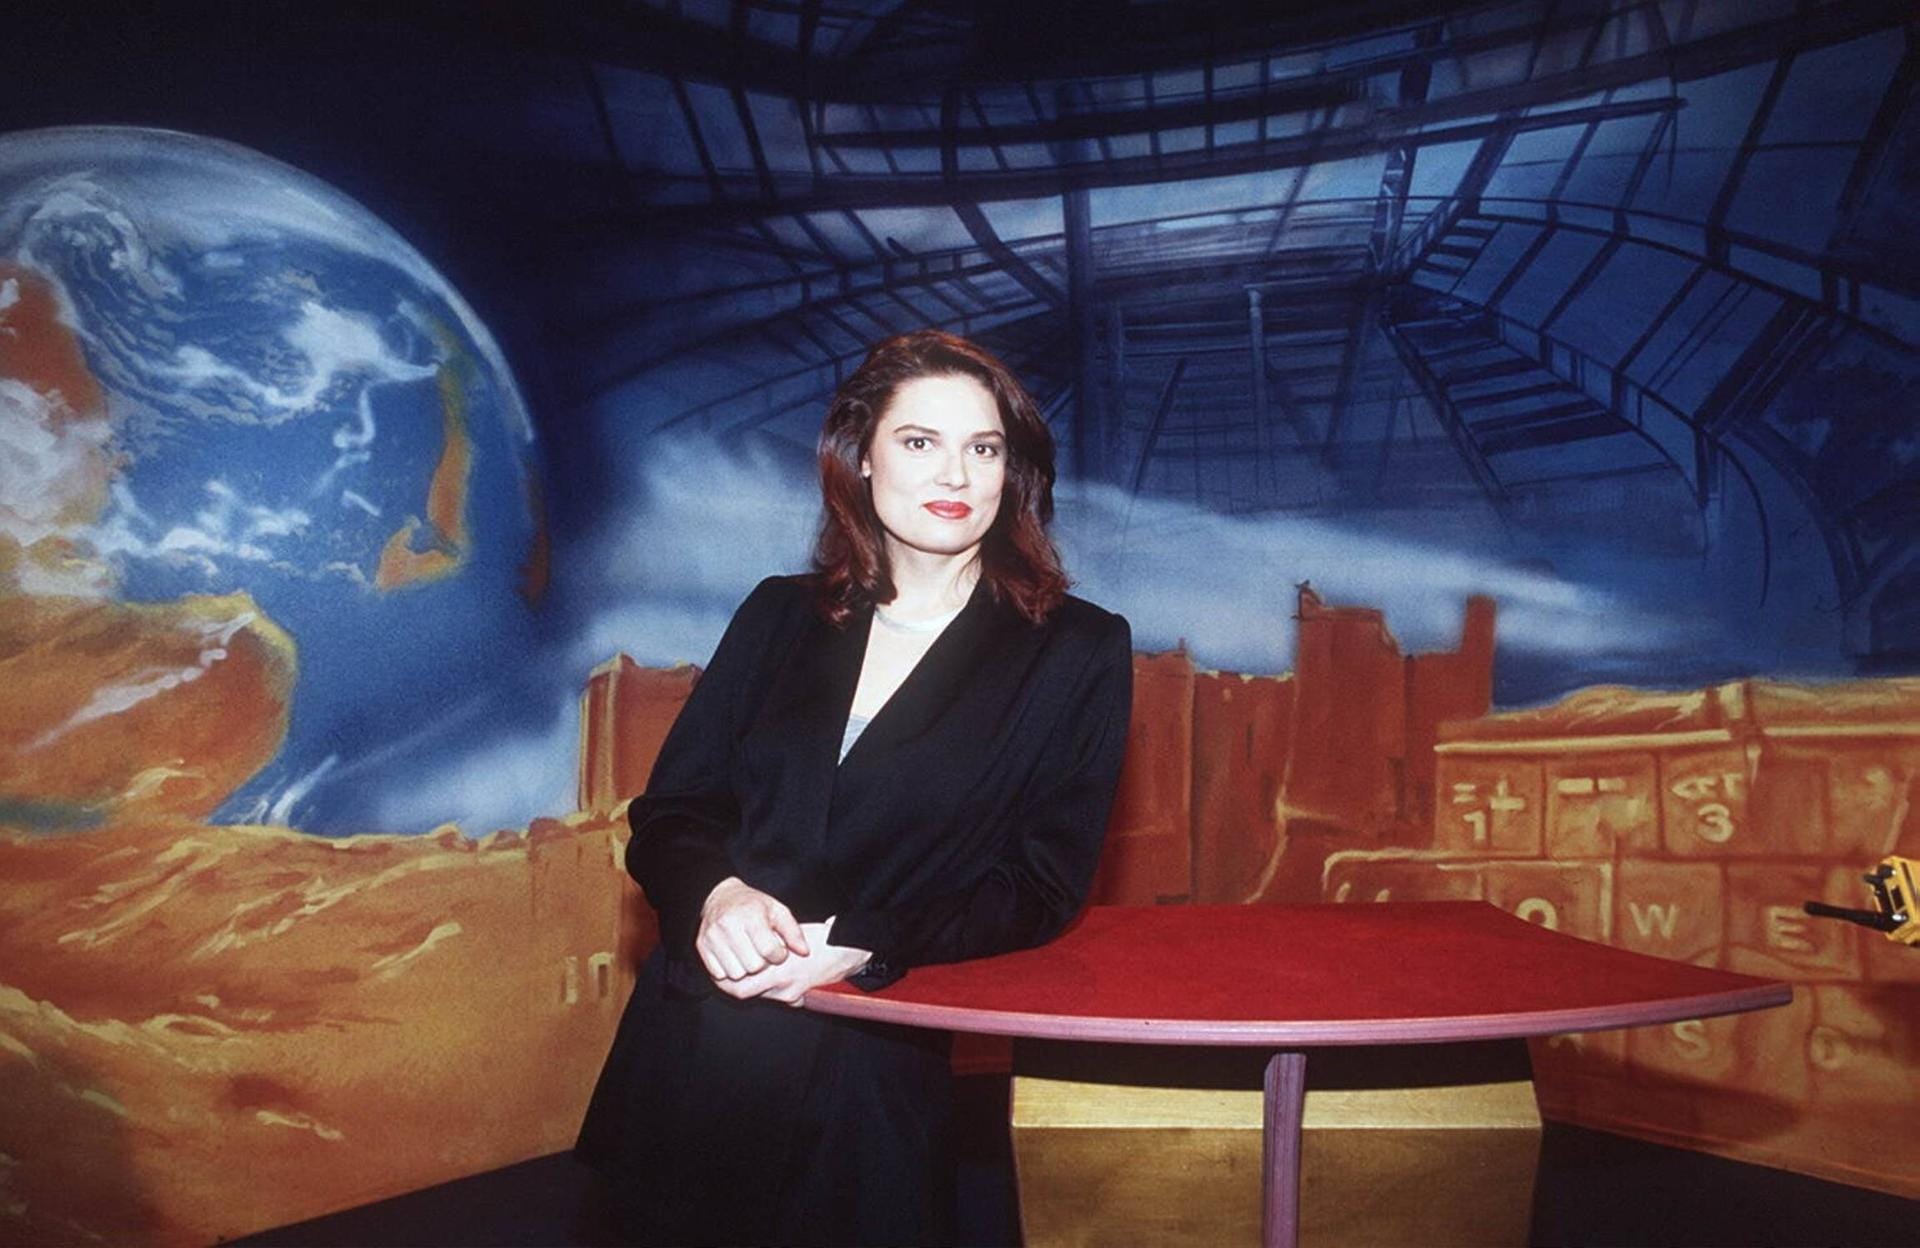 Sie moderierte außerdem die Sendungen "Hier und heute" und "kuk" für den WDR.